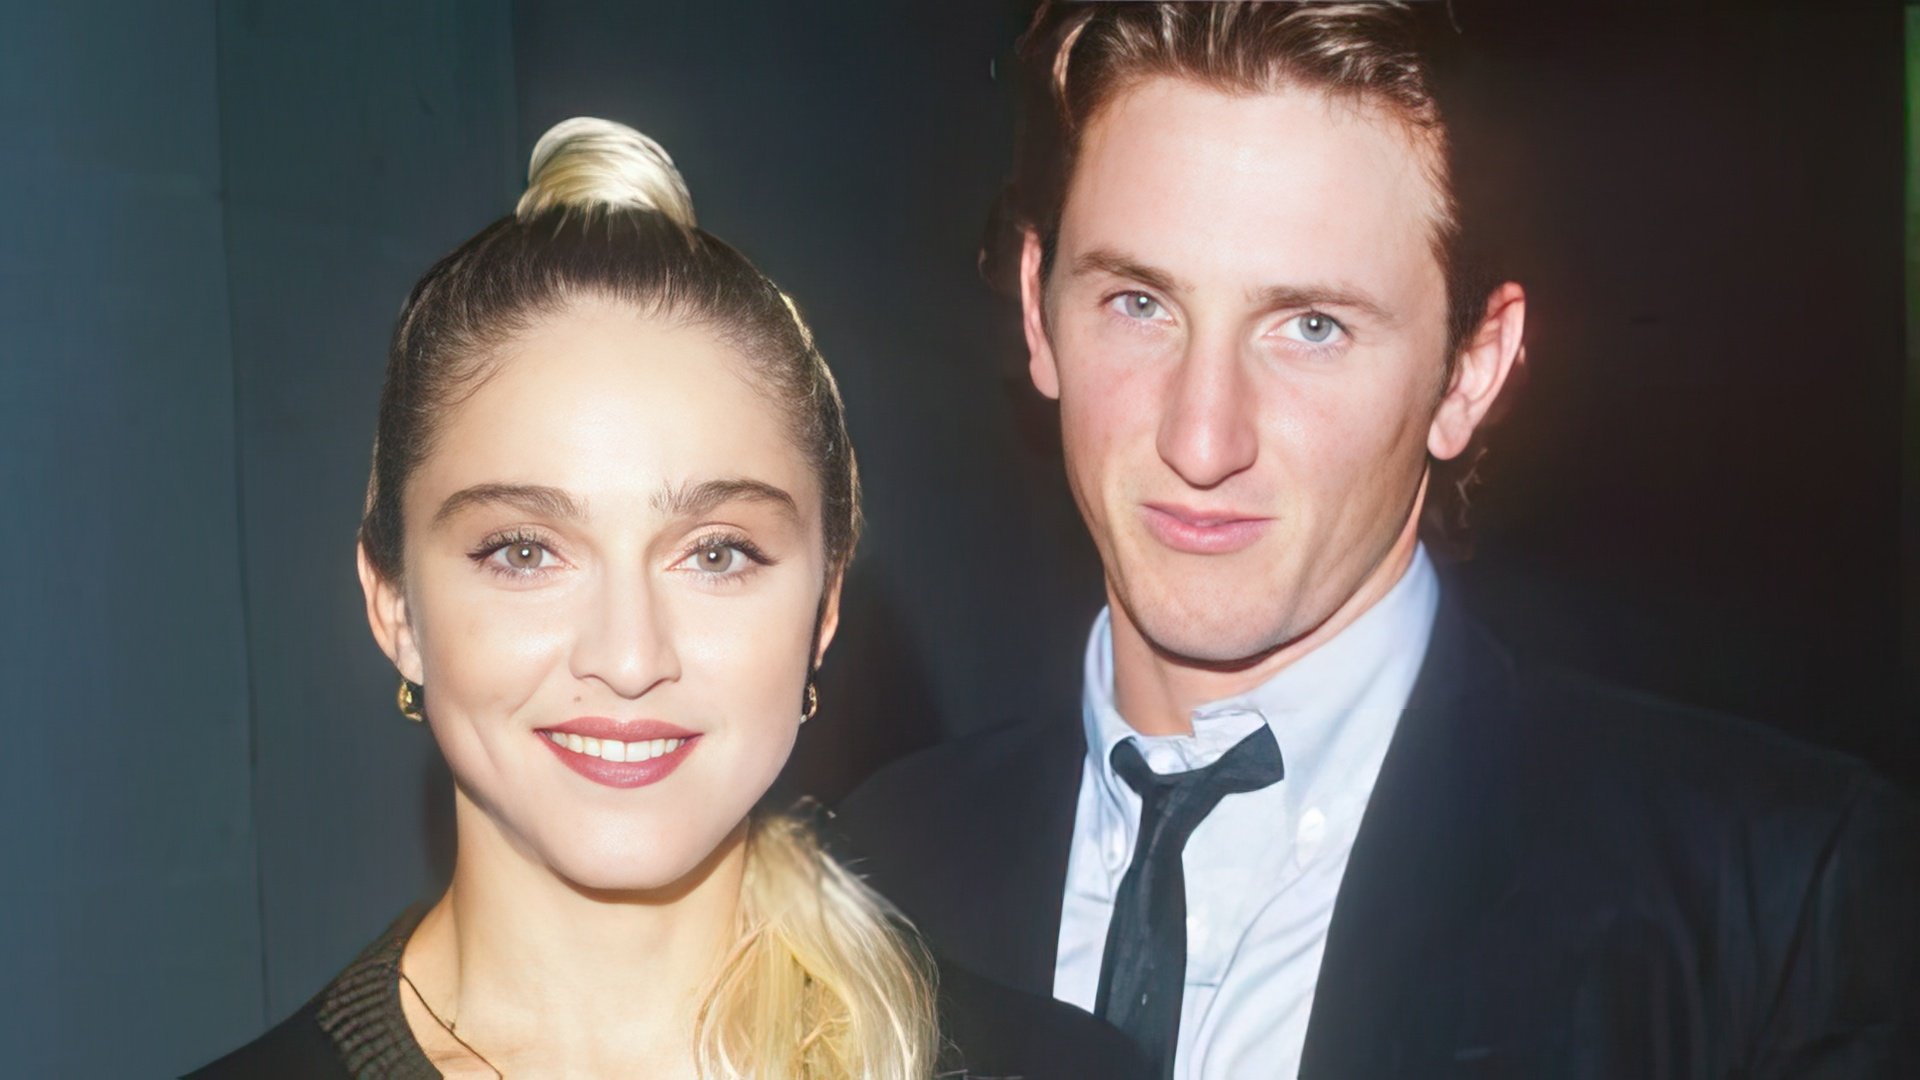 Madonna and Sean Penn met in 1985